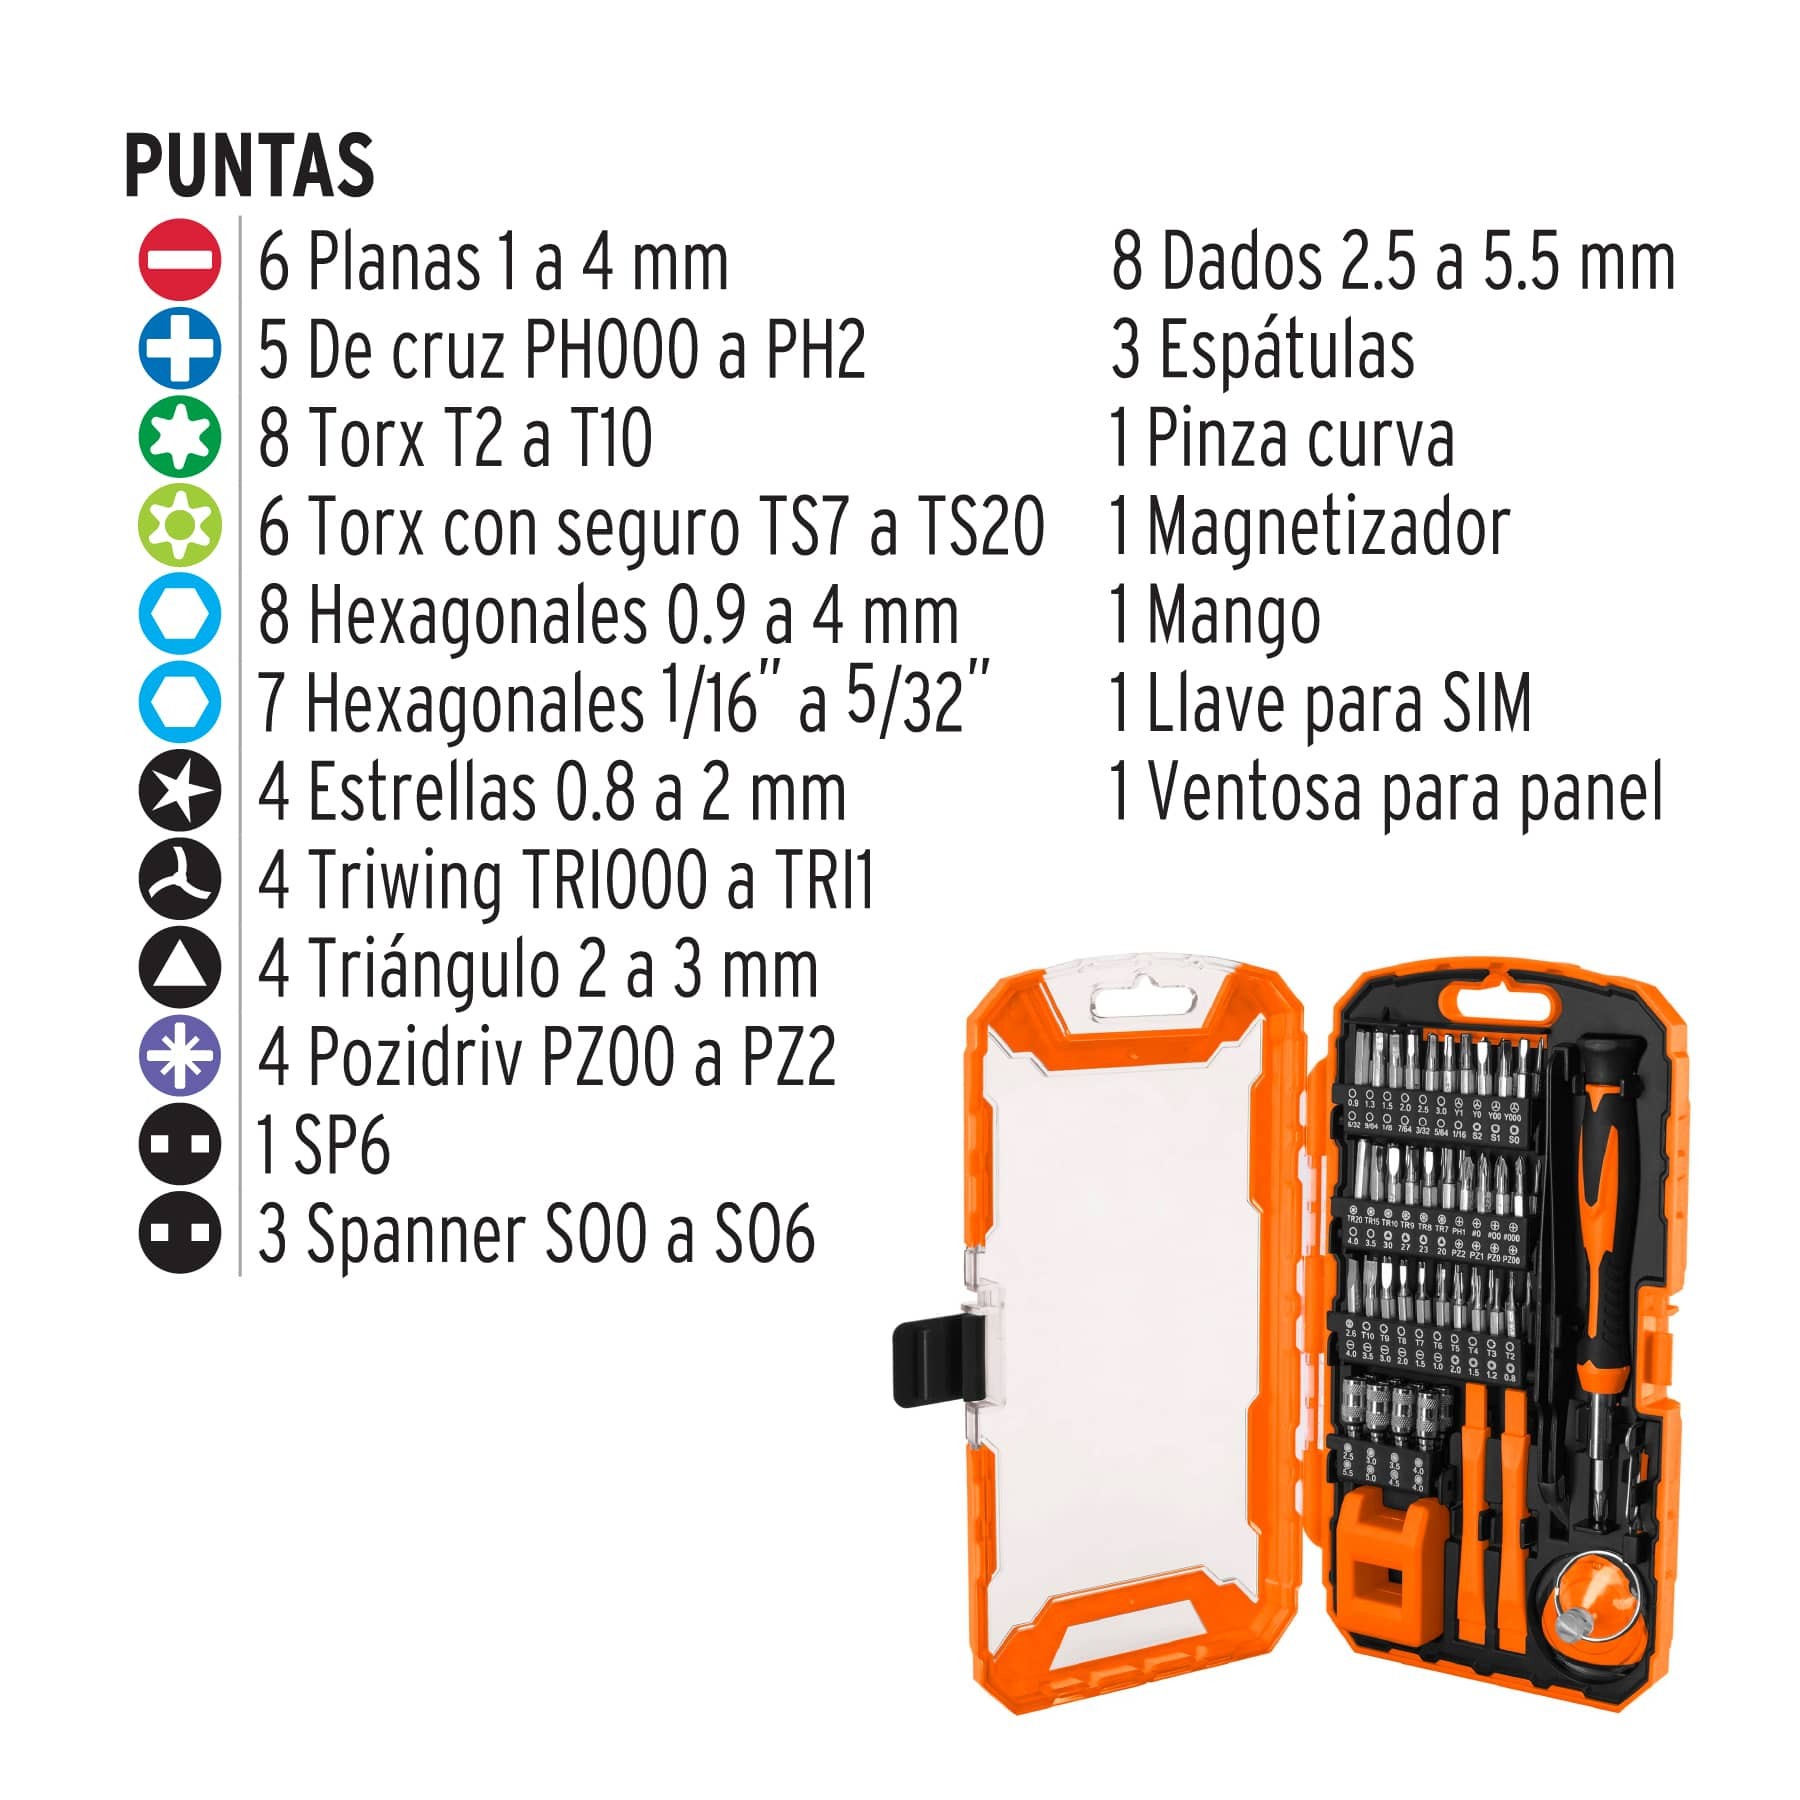 JUEGO DE 32 PCS HERRAMIENTA PARA REPARAR CELULARES / Electrónica